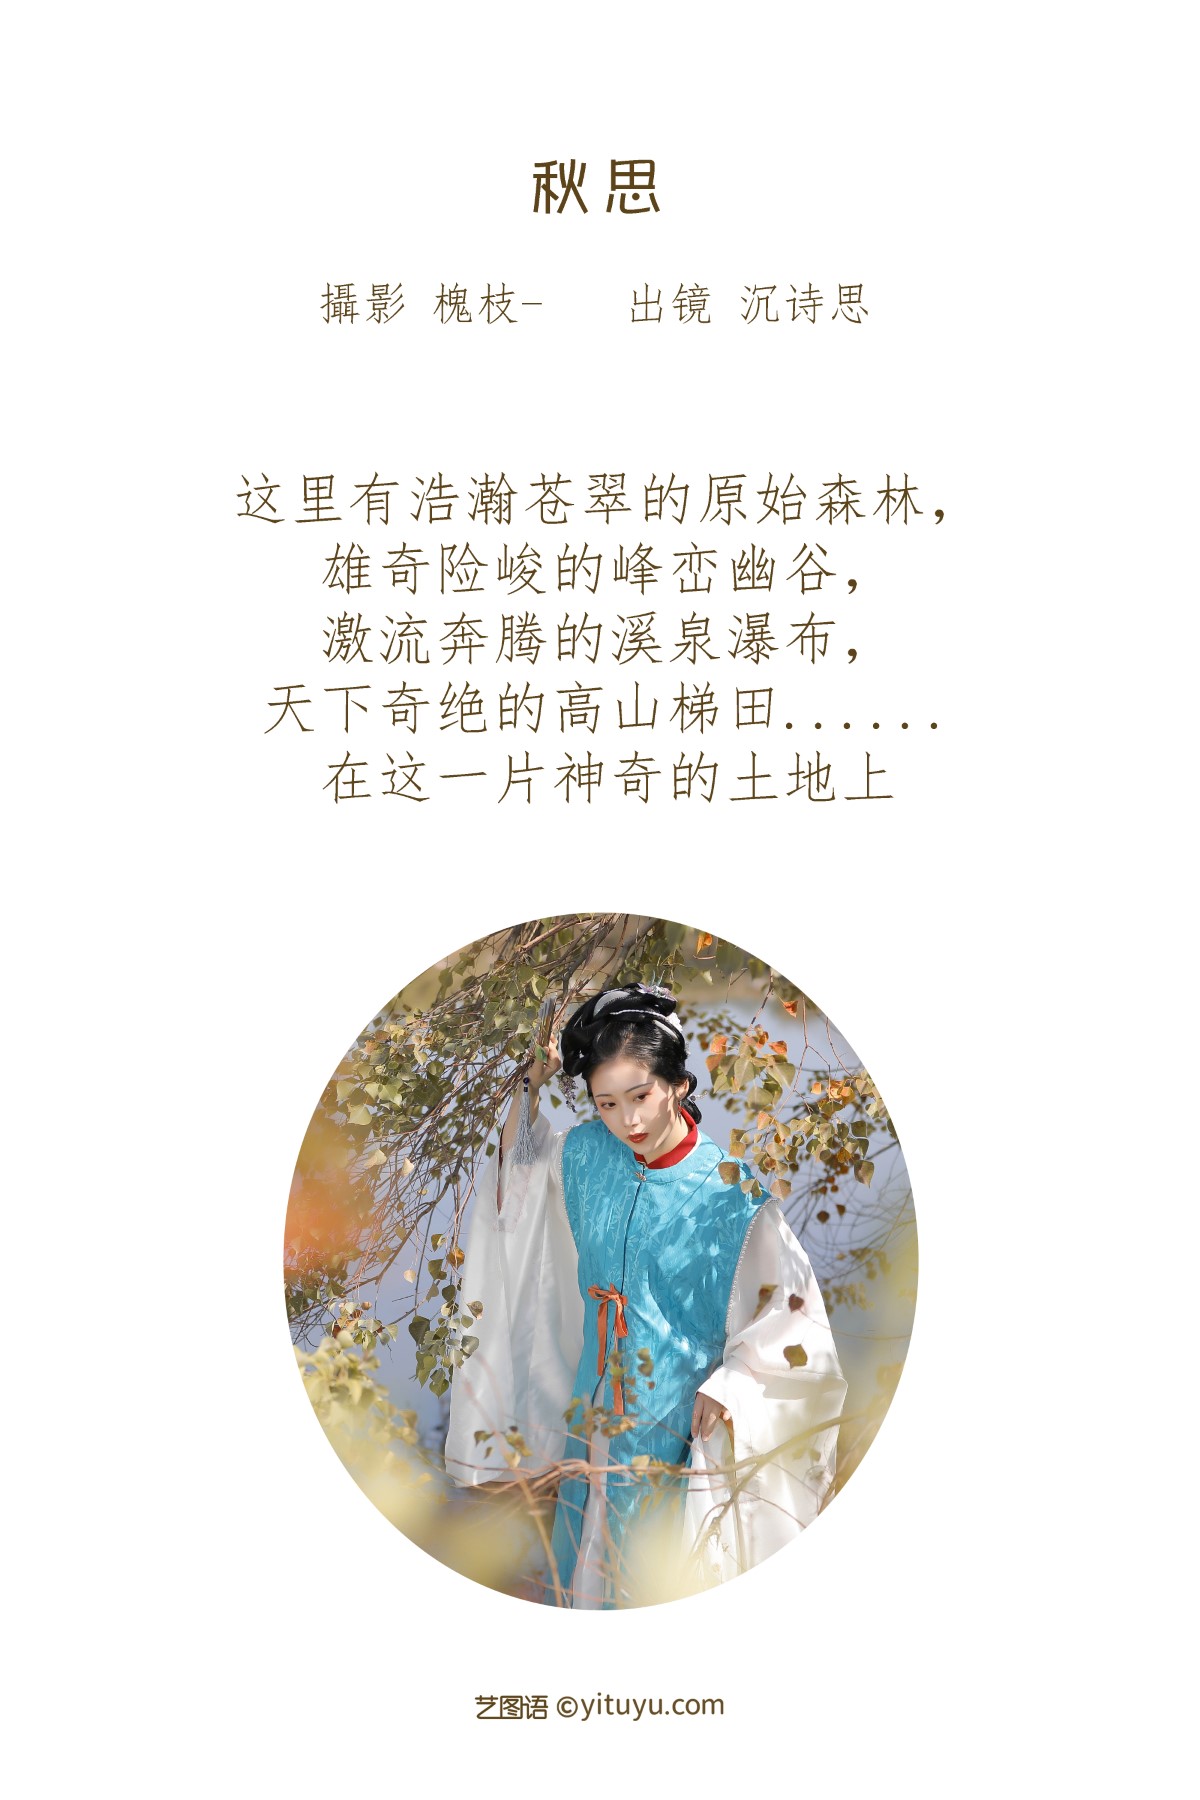 YiTuYu艺图语 Vol 1819 Shen Shi Si 0001 5550314830.jpg